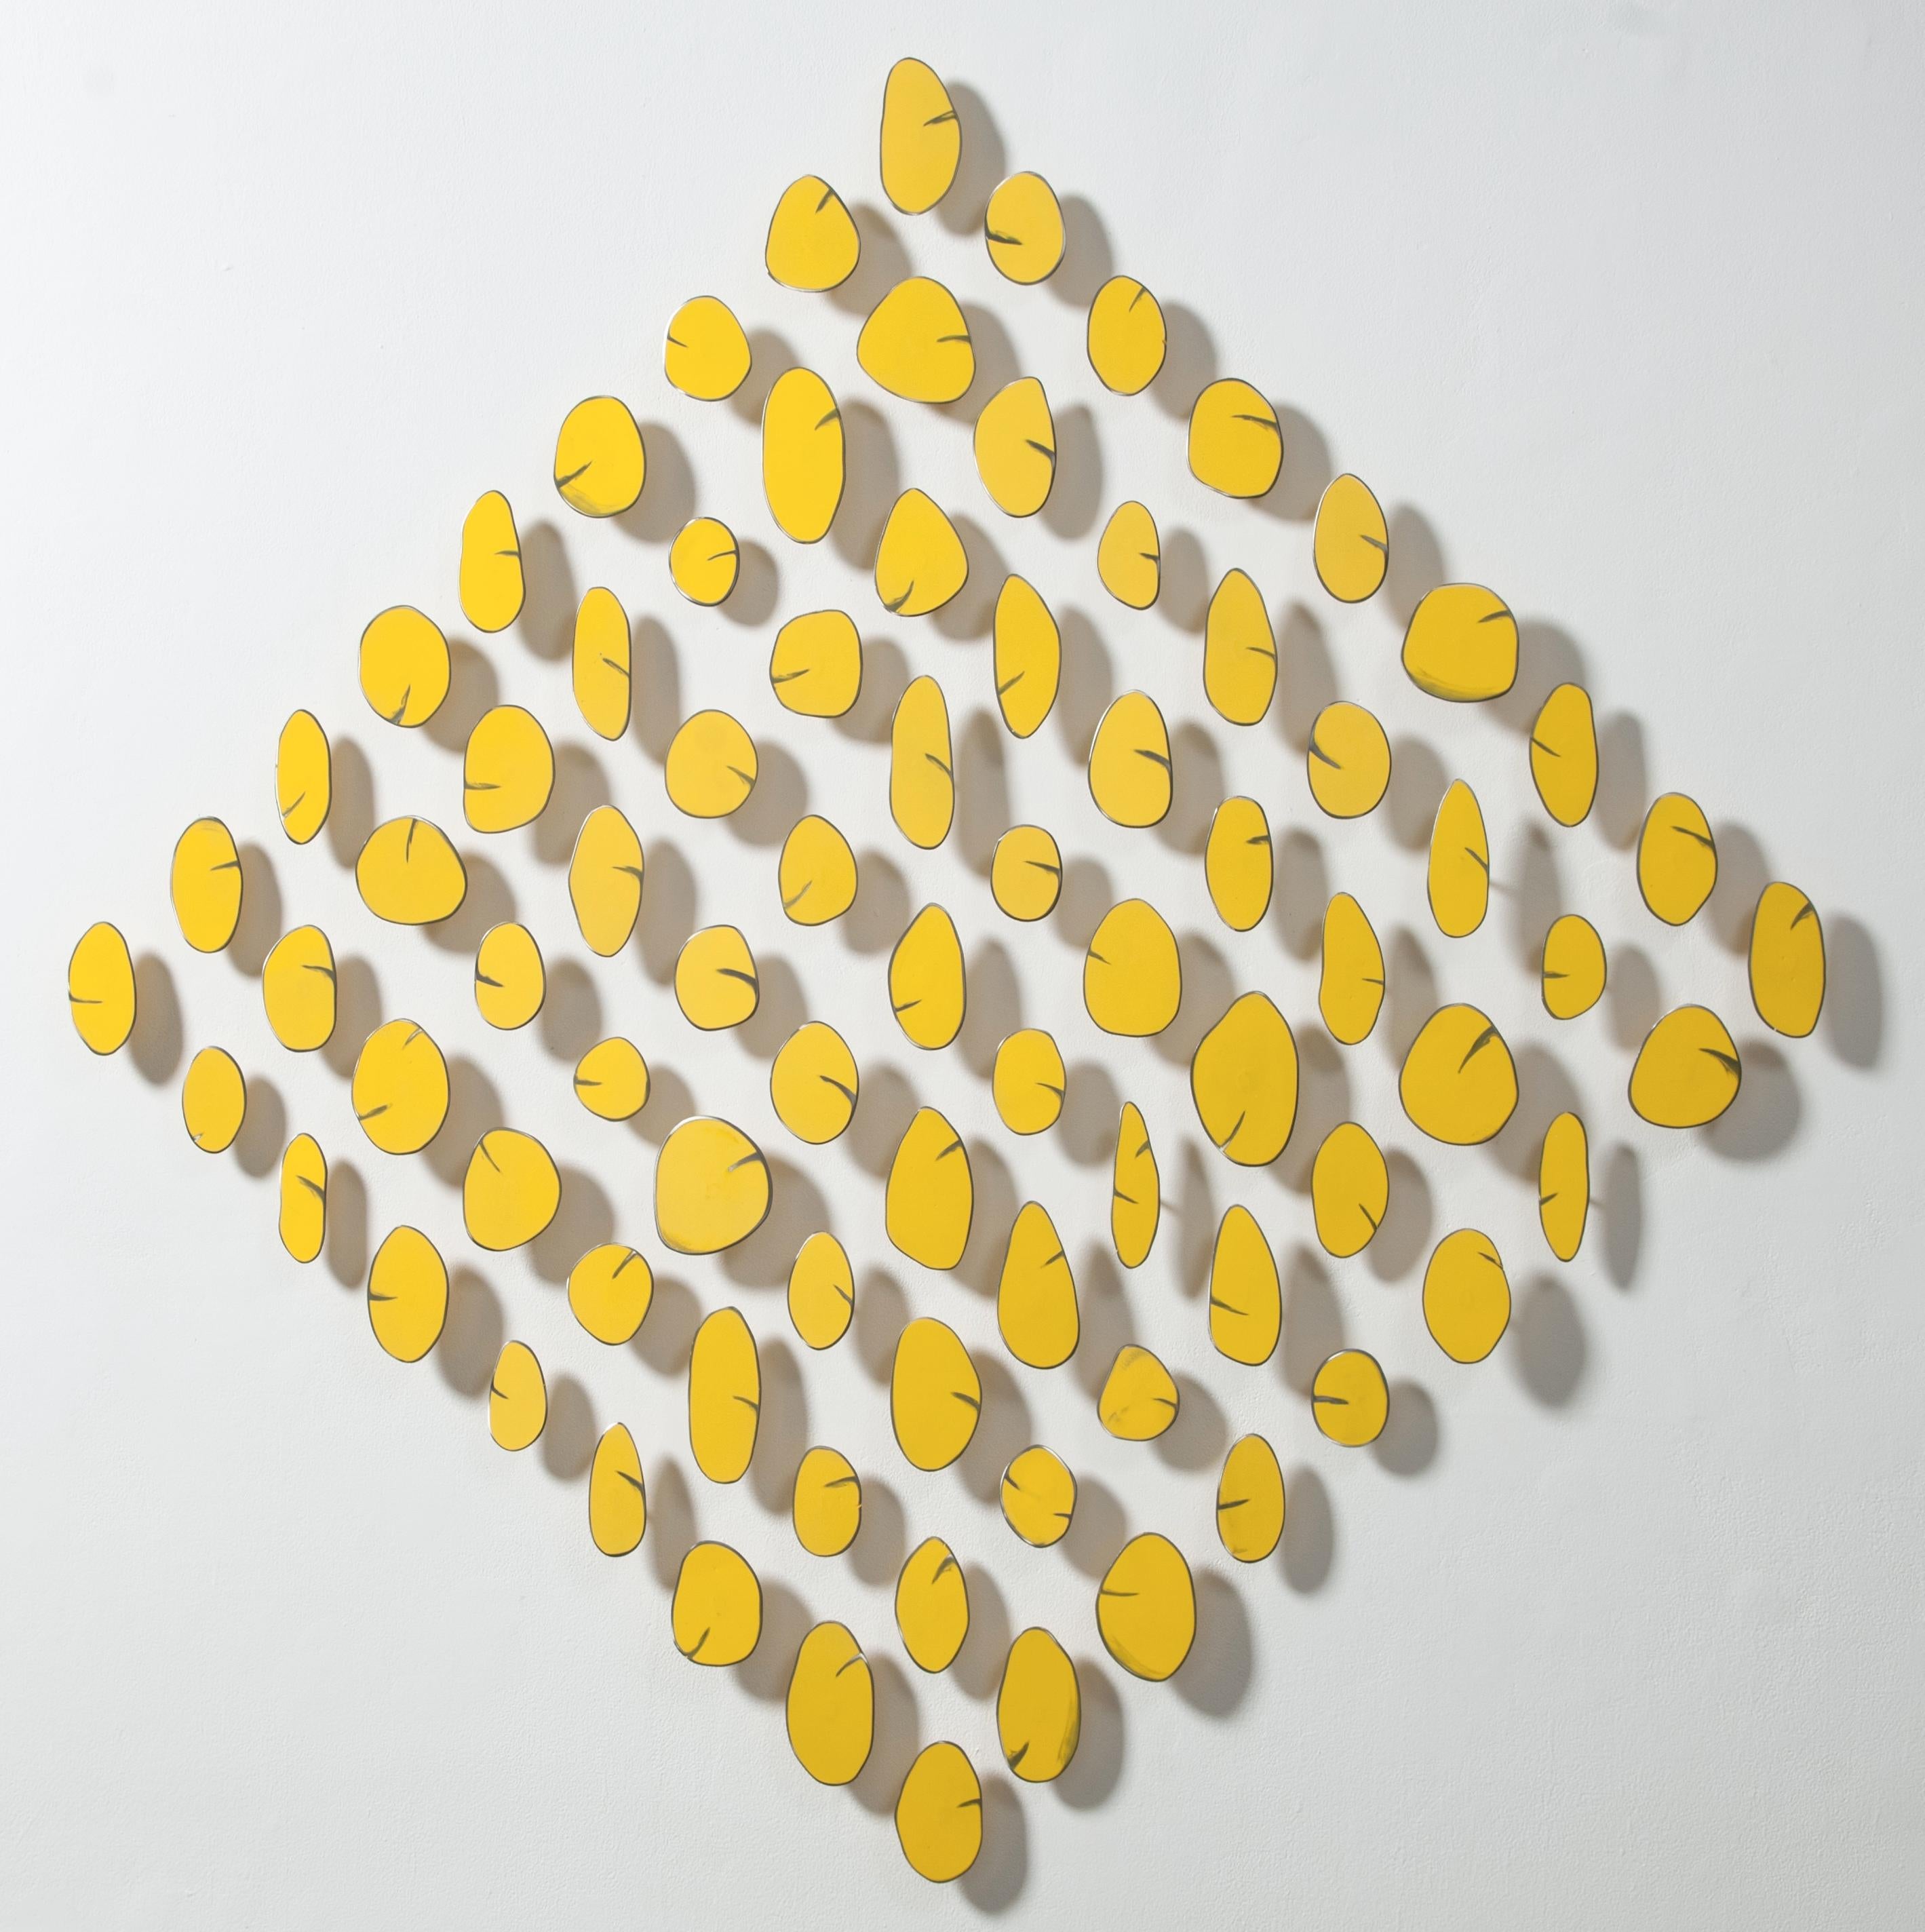 Carolina Sardi Abstract Sculpture - Yellow in a Diamond